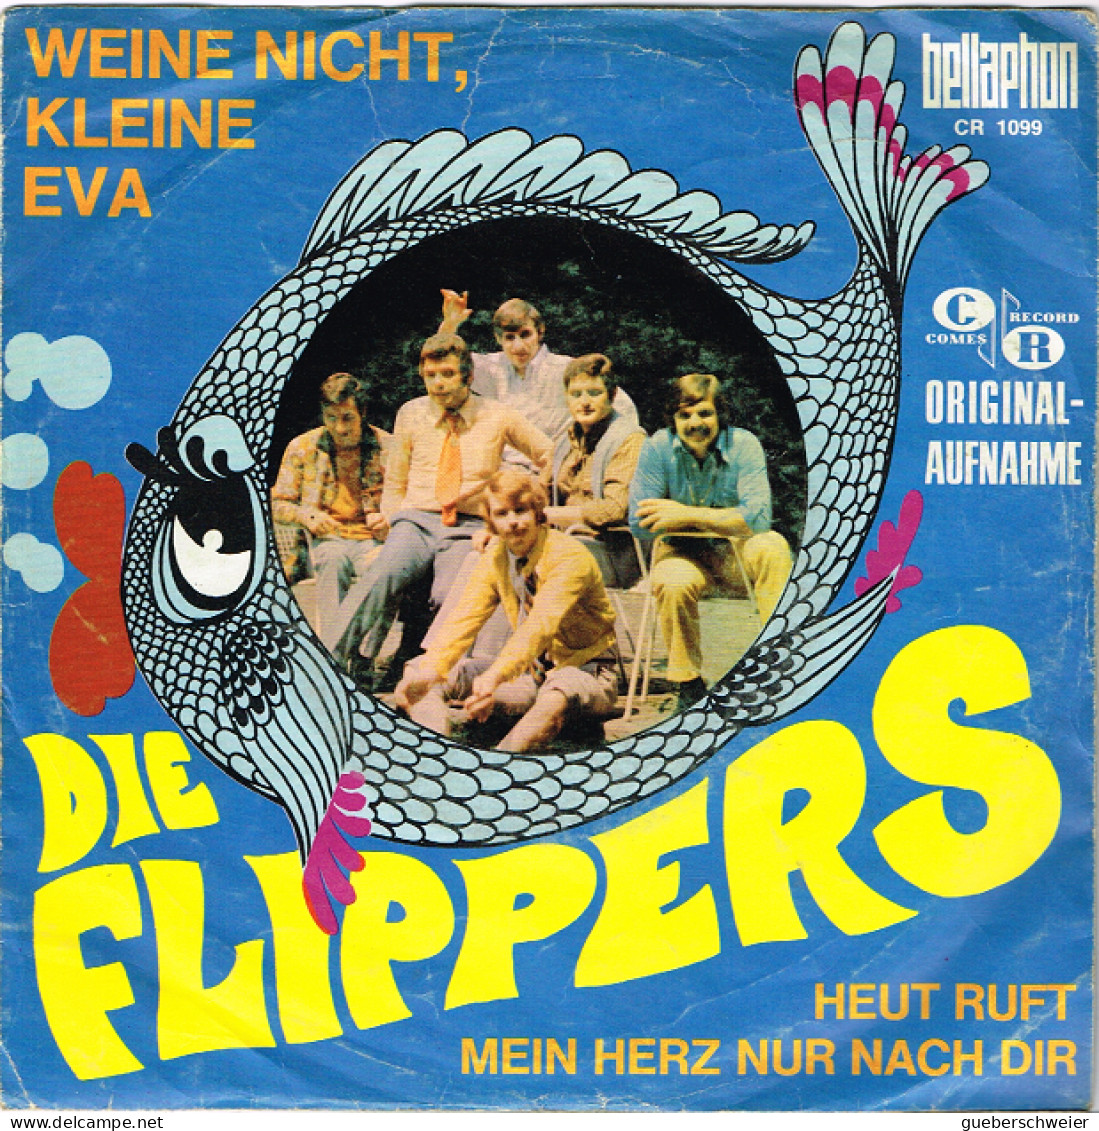 DIE FLIPPERS 45 Tours EP - Weine Nicht Kleine Eva - Heute Ruft Mein Herz Nur Nach Dich - Other - German Music